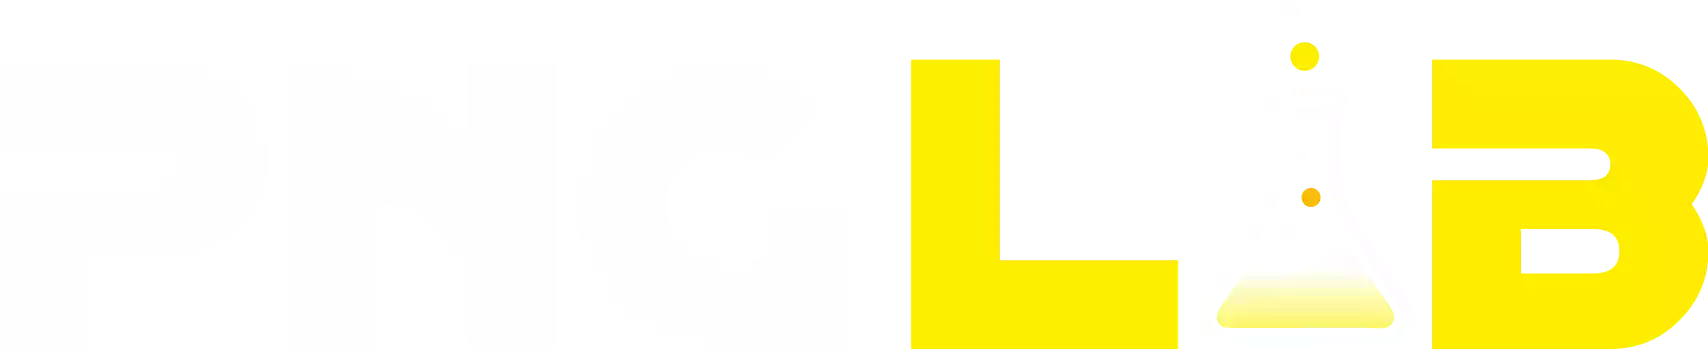 png-lab-logo